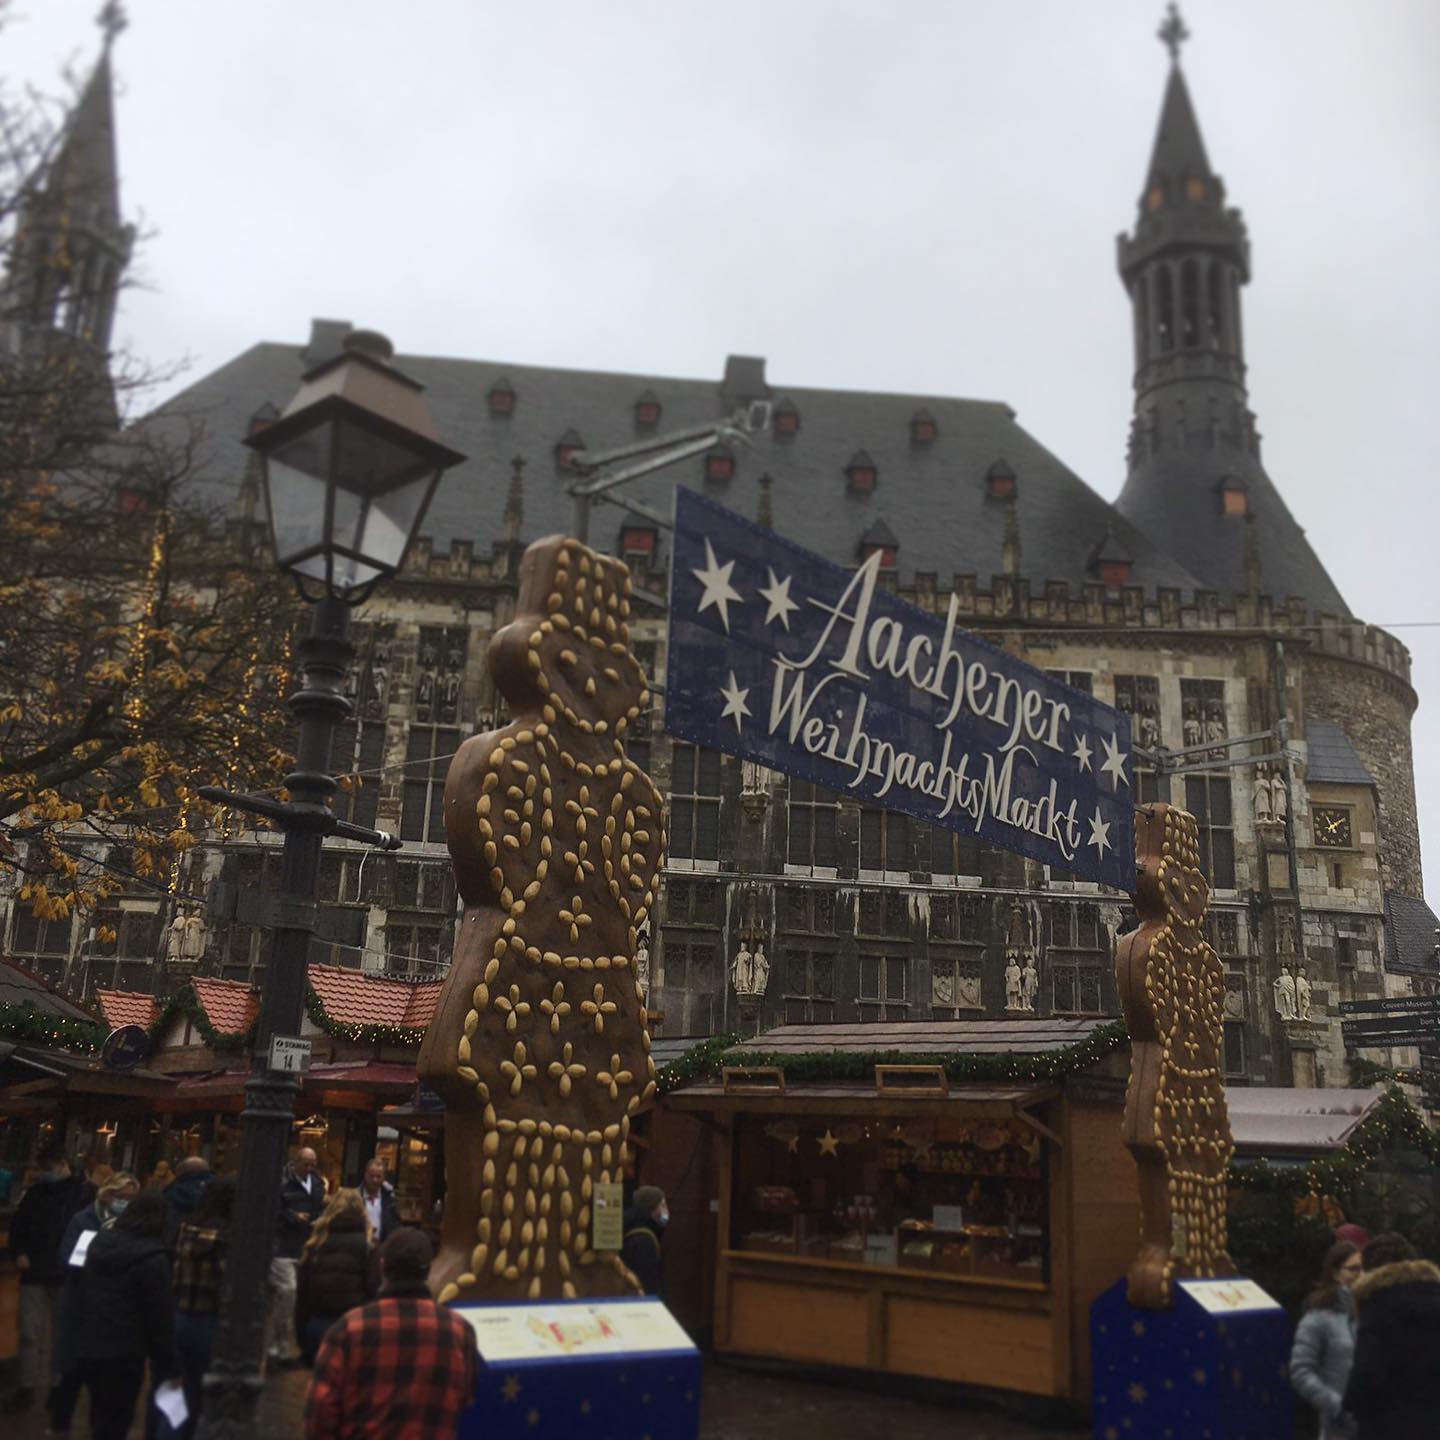 Eröffnung des 48. Aachener Weihnachtsmarktes auf der Rathaustreppe.